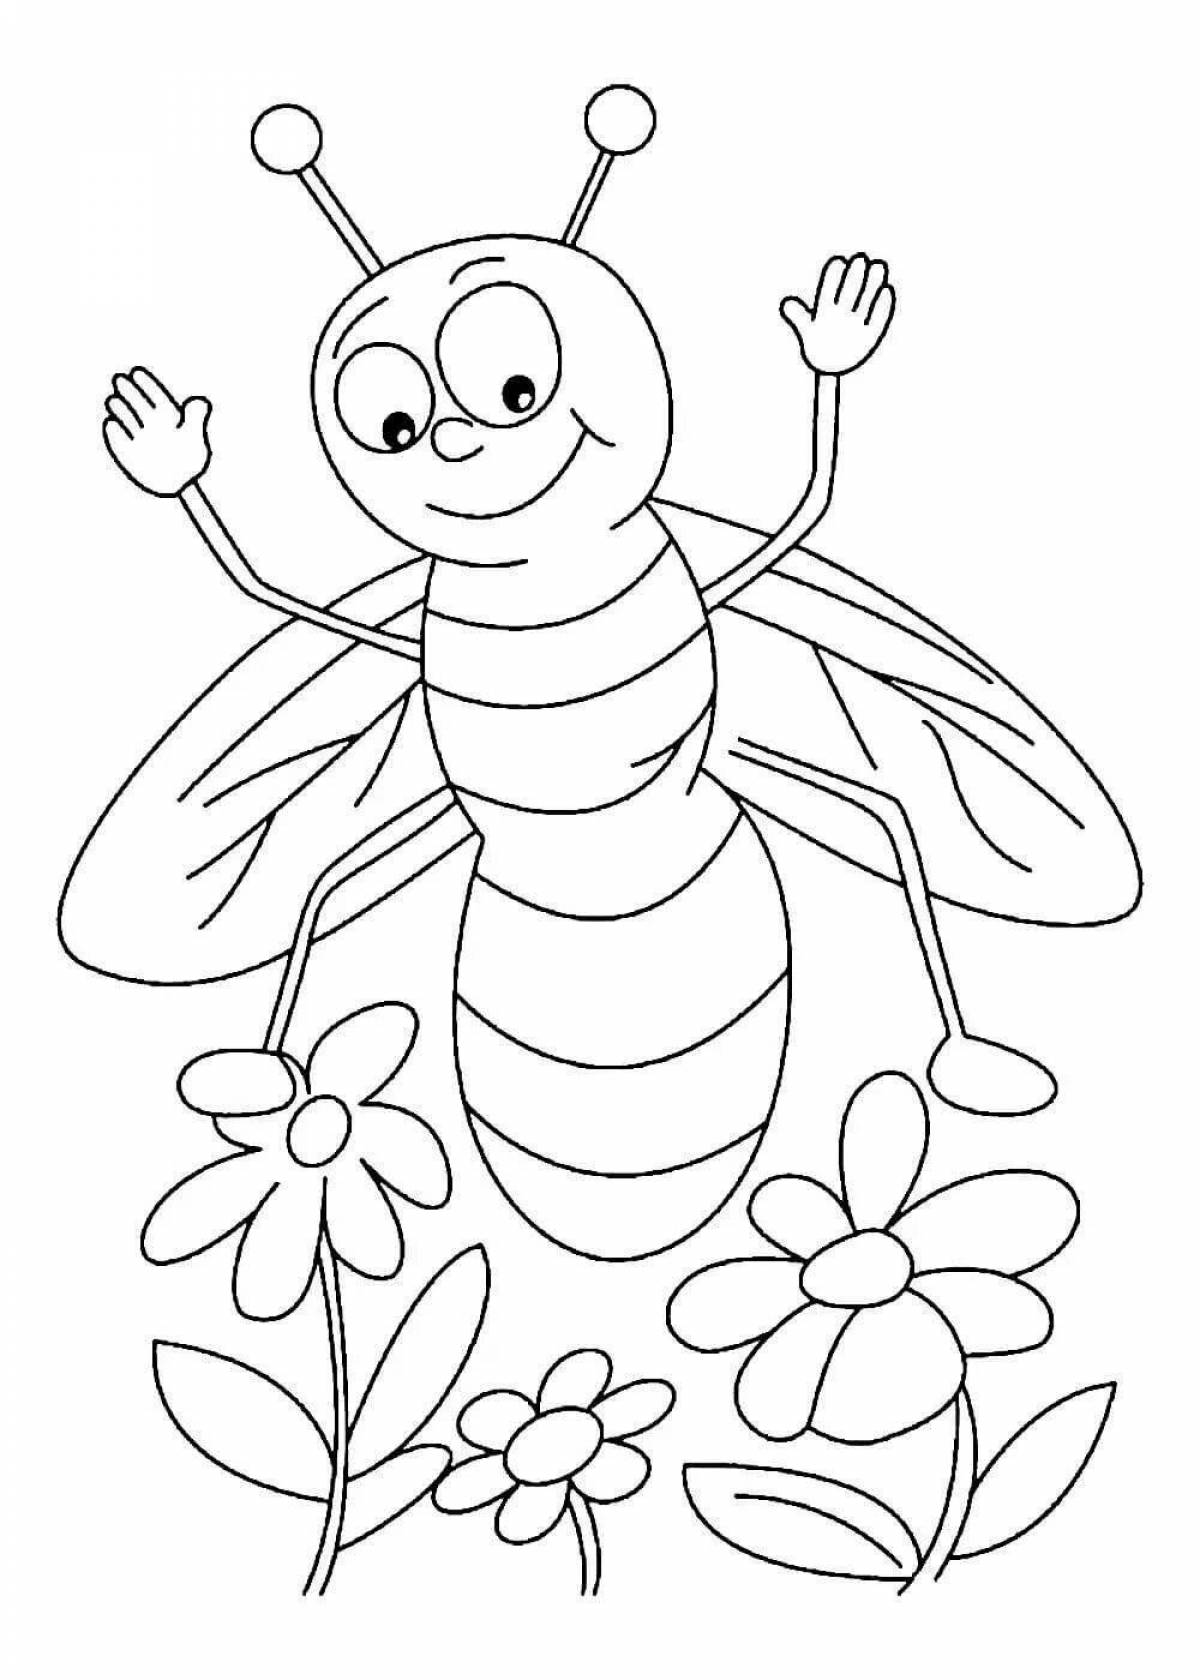 Развлекательная раскраска насекомых для детей 5-6 лет